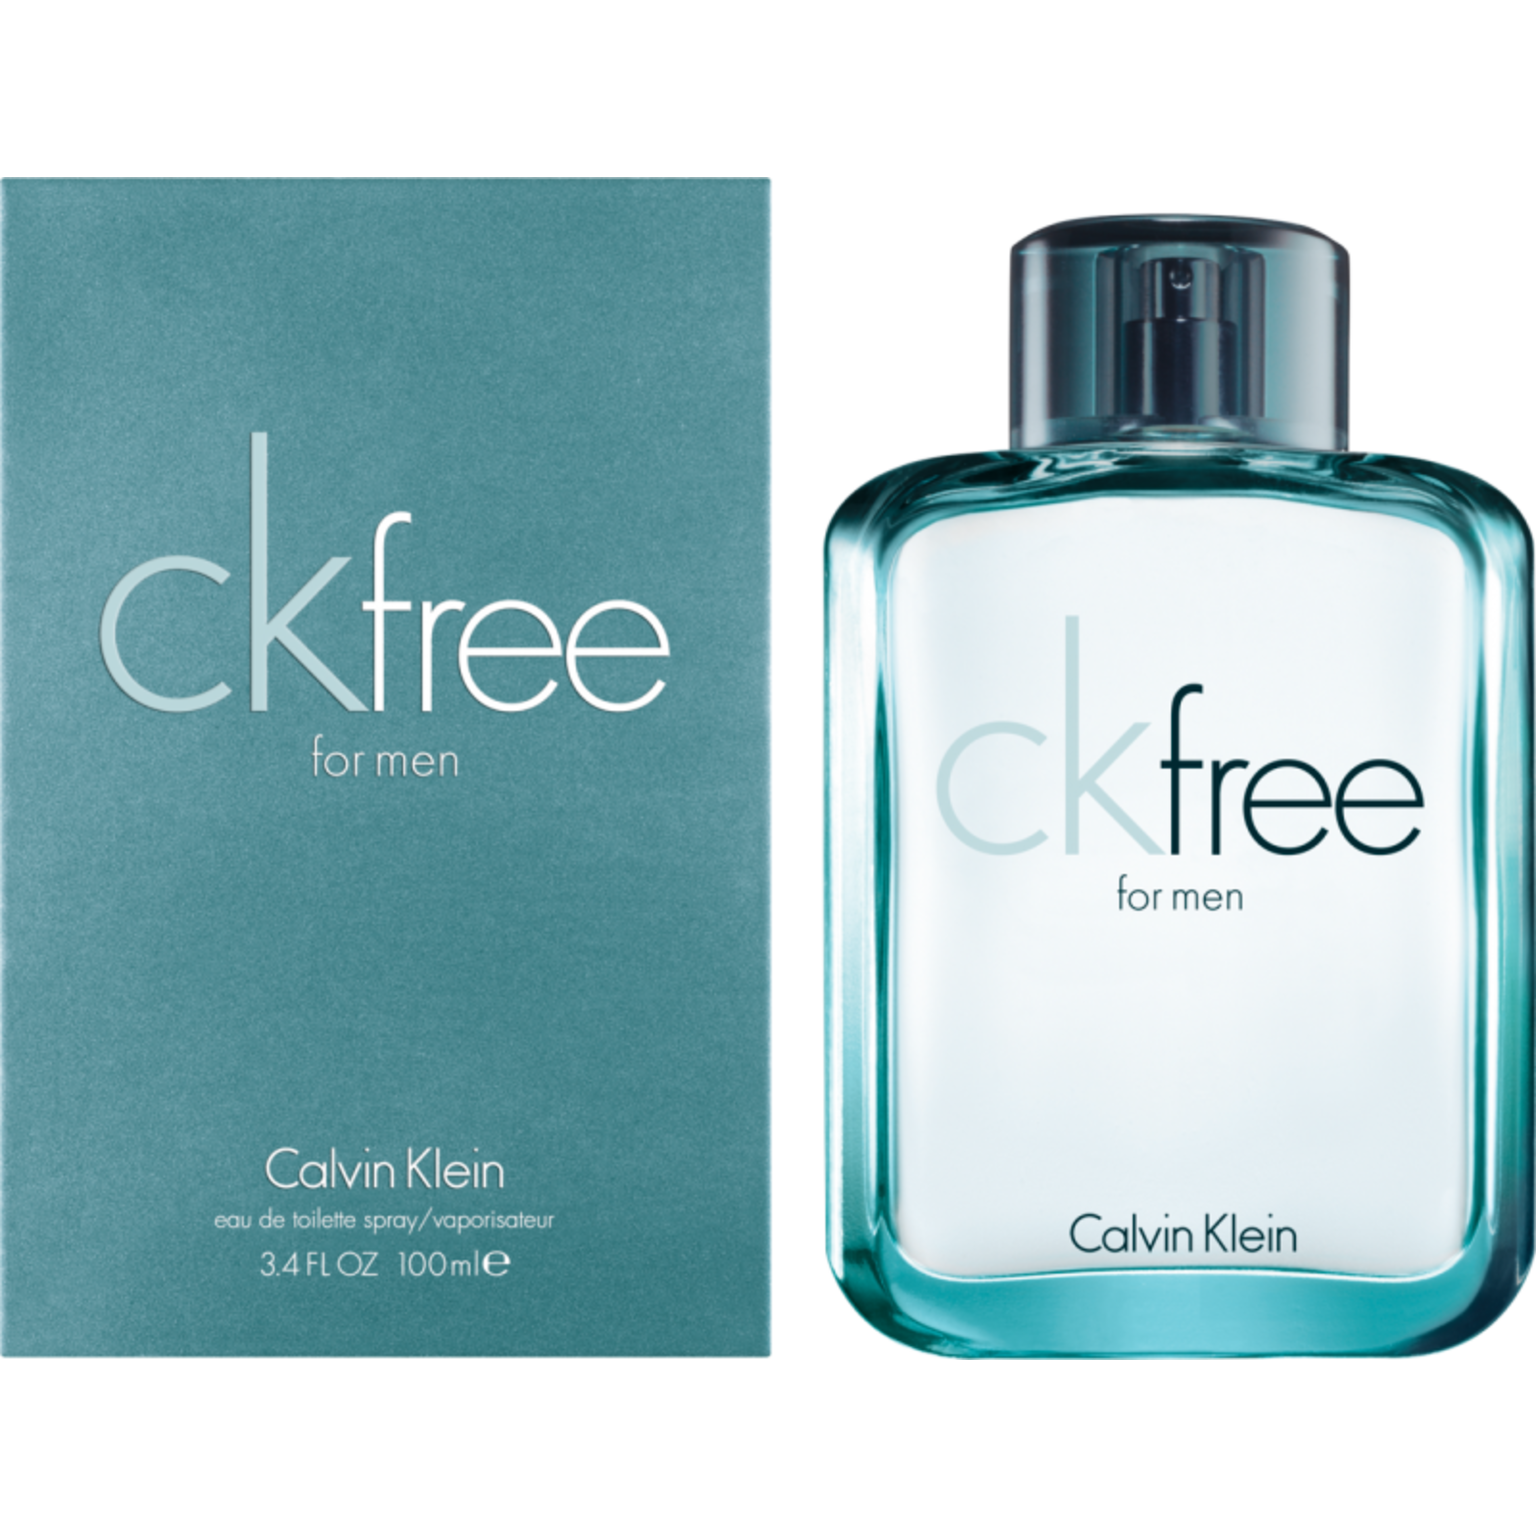 Calvin Klein CK Free For Men Eau de Toilette